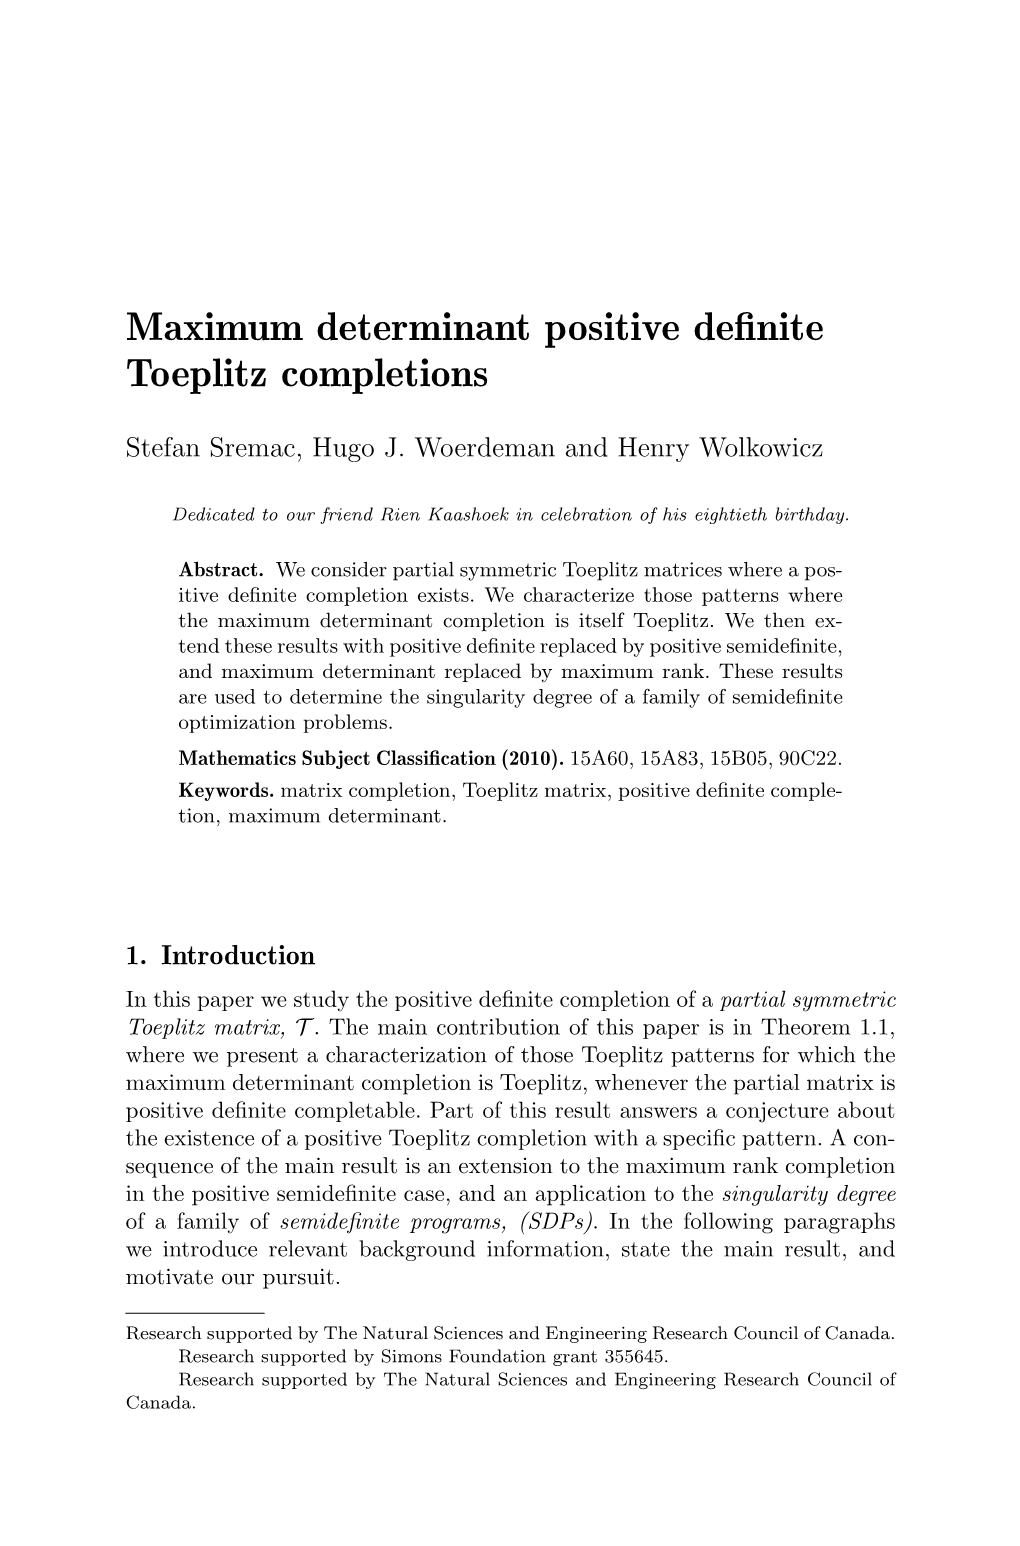 Maximum Determinant Positive Definite Toeplitz Completions